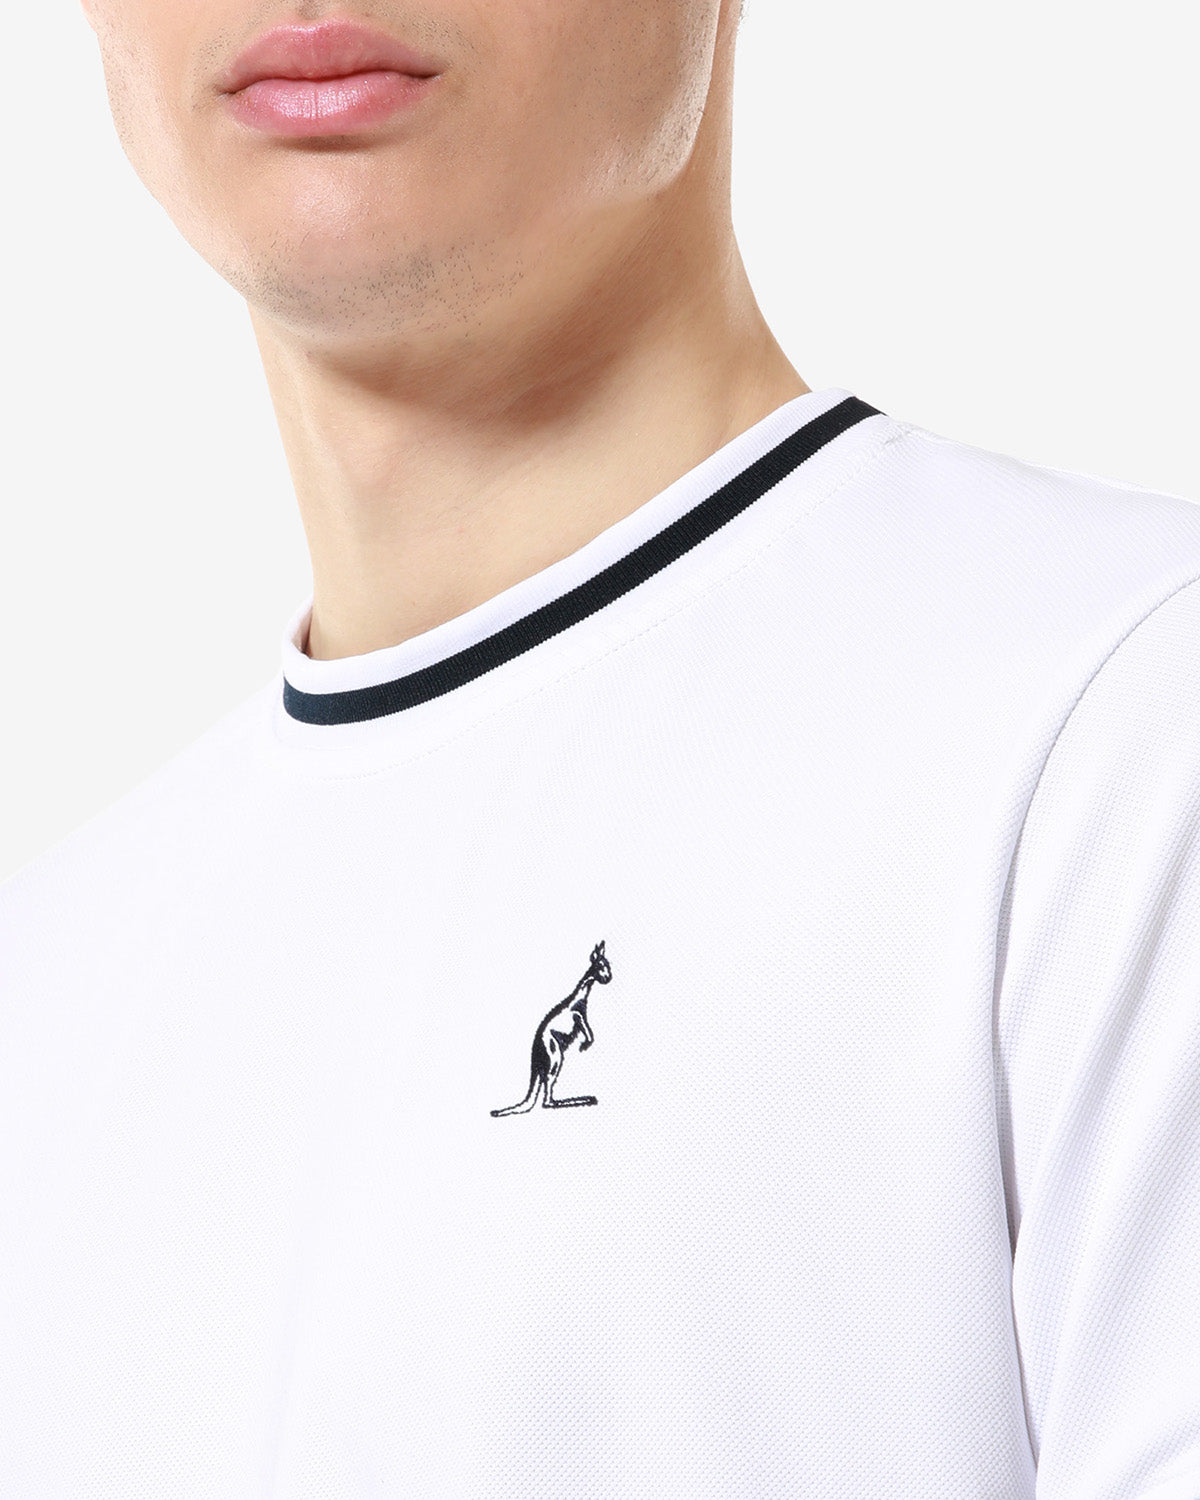 Technical Piquet T-shirt: Australian Sportswear